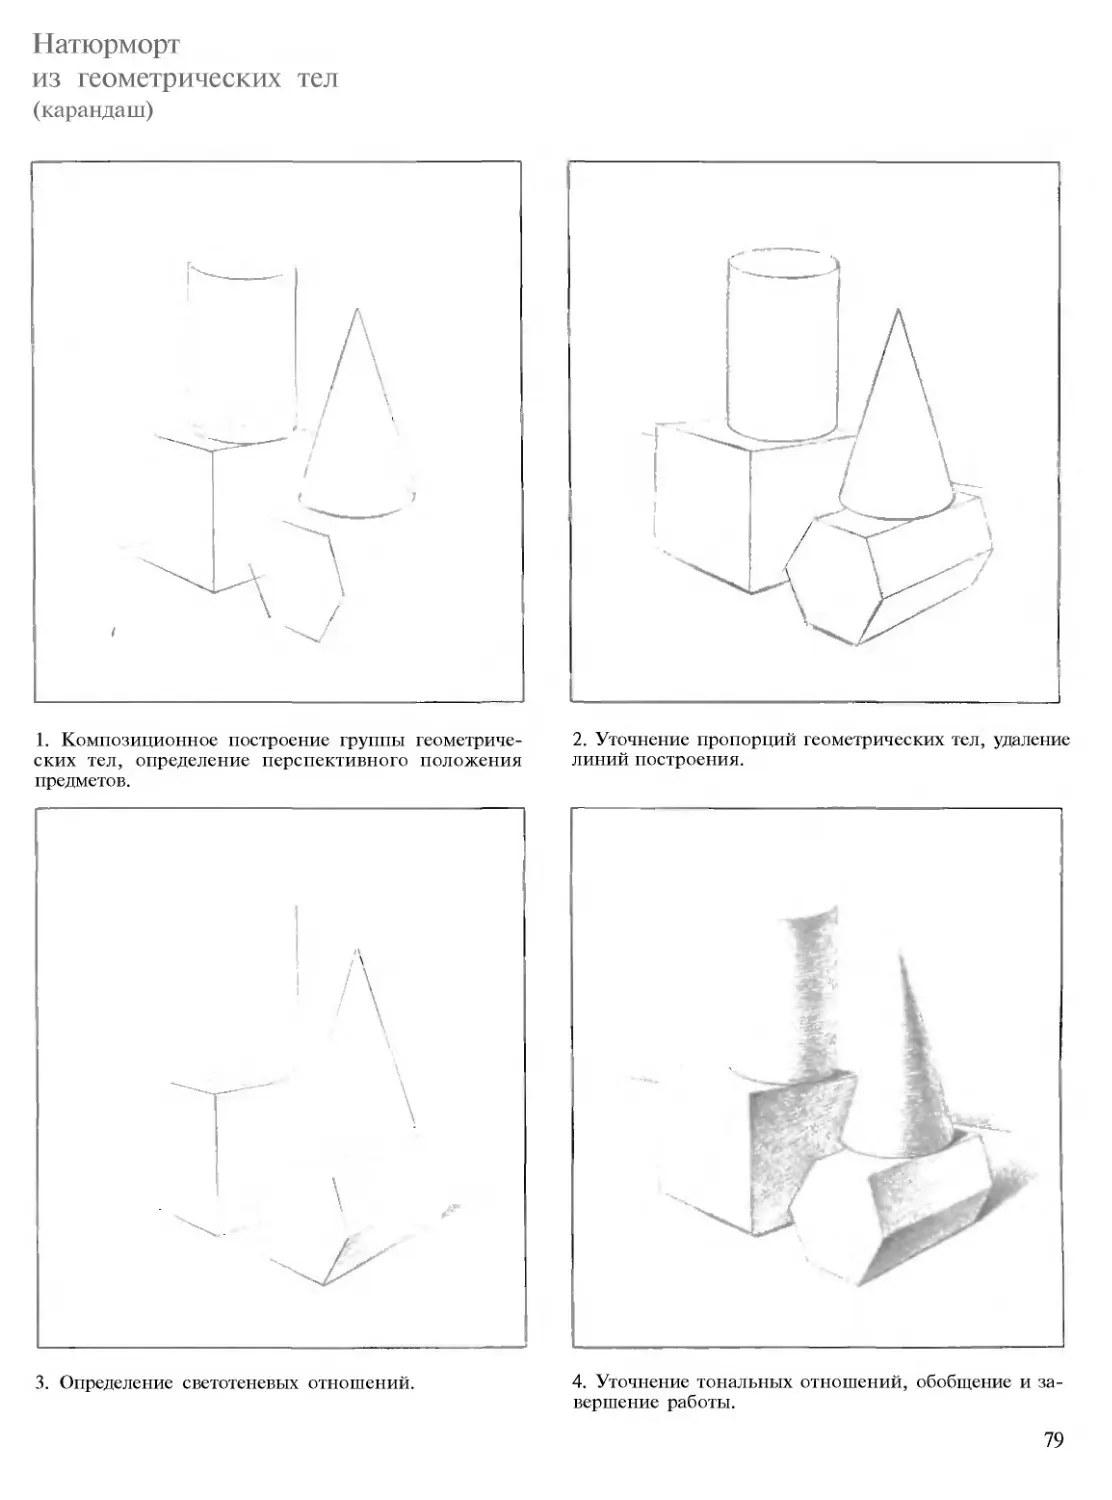 Этапы рисунка натюрморта из геометрических тел